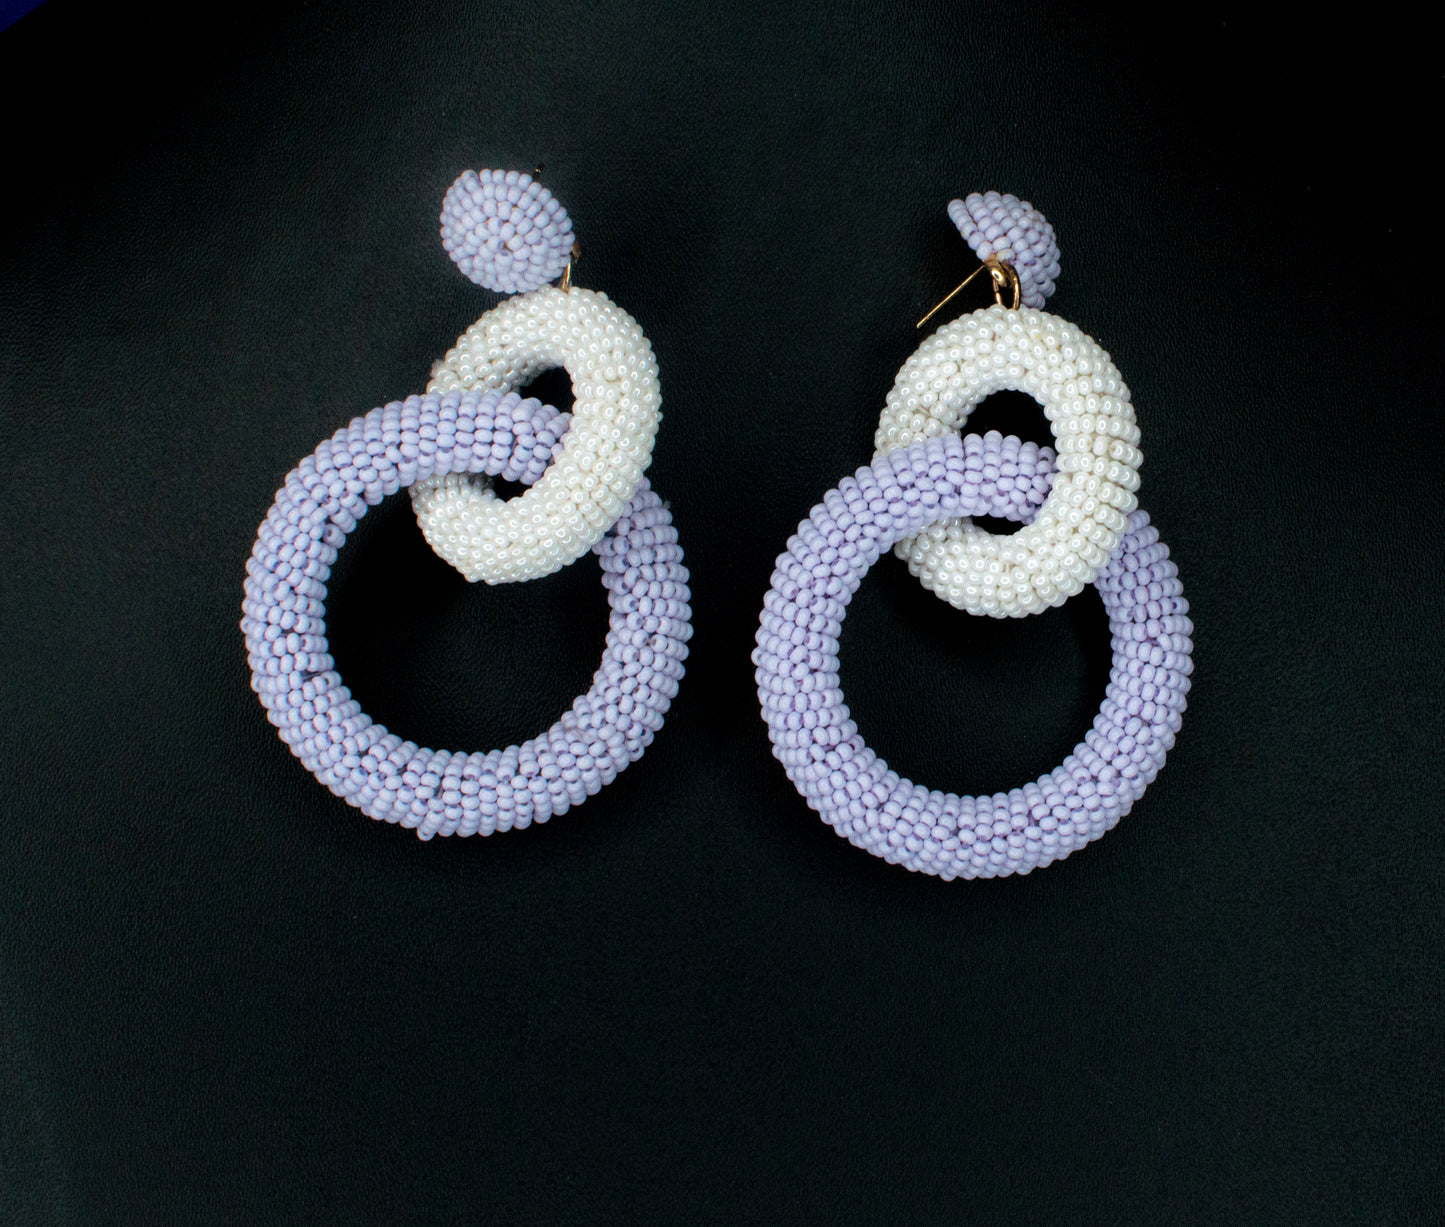 Roundelle Embroidered Earrings : Handmade